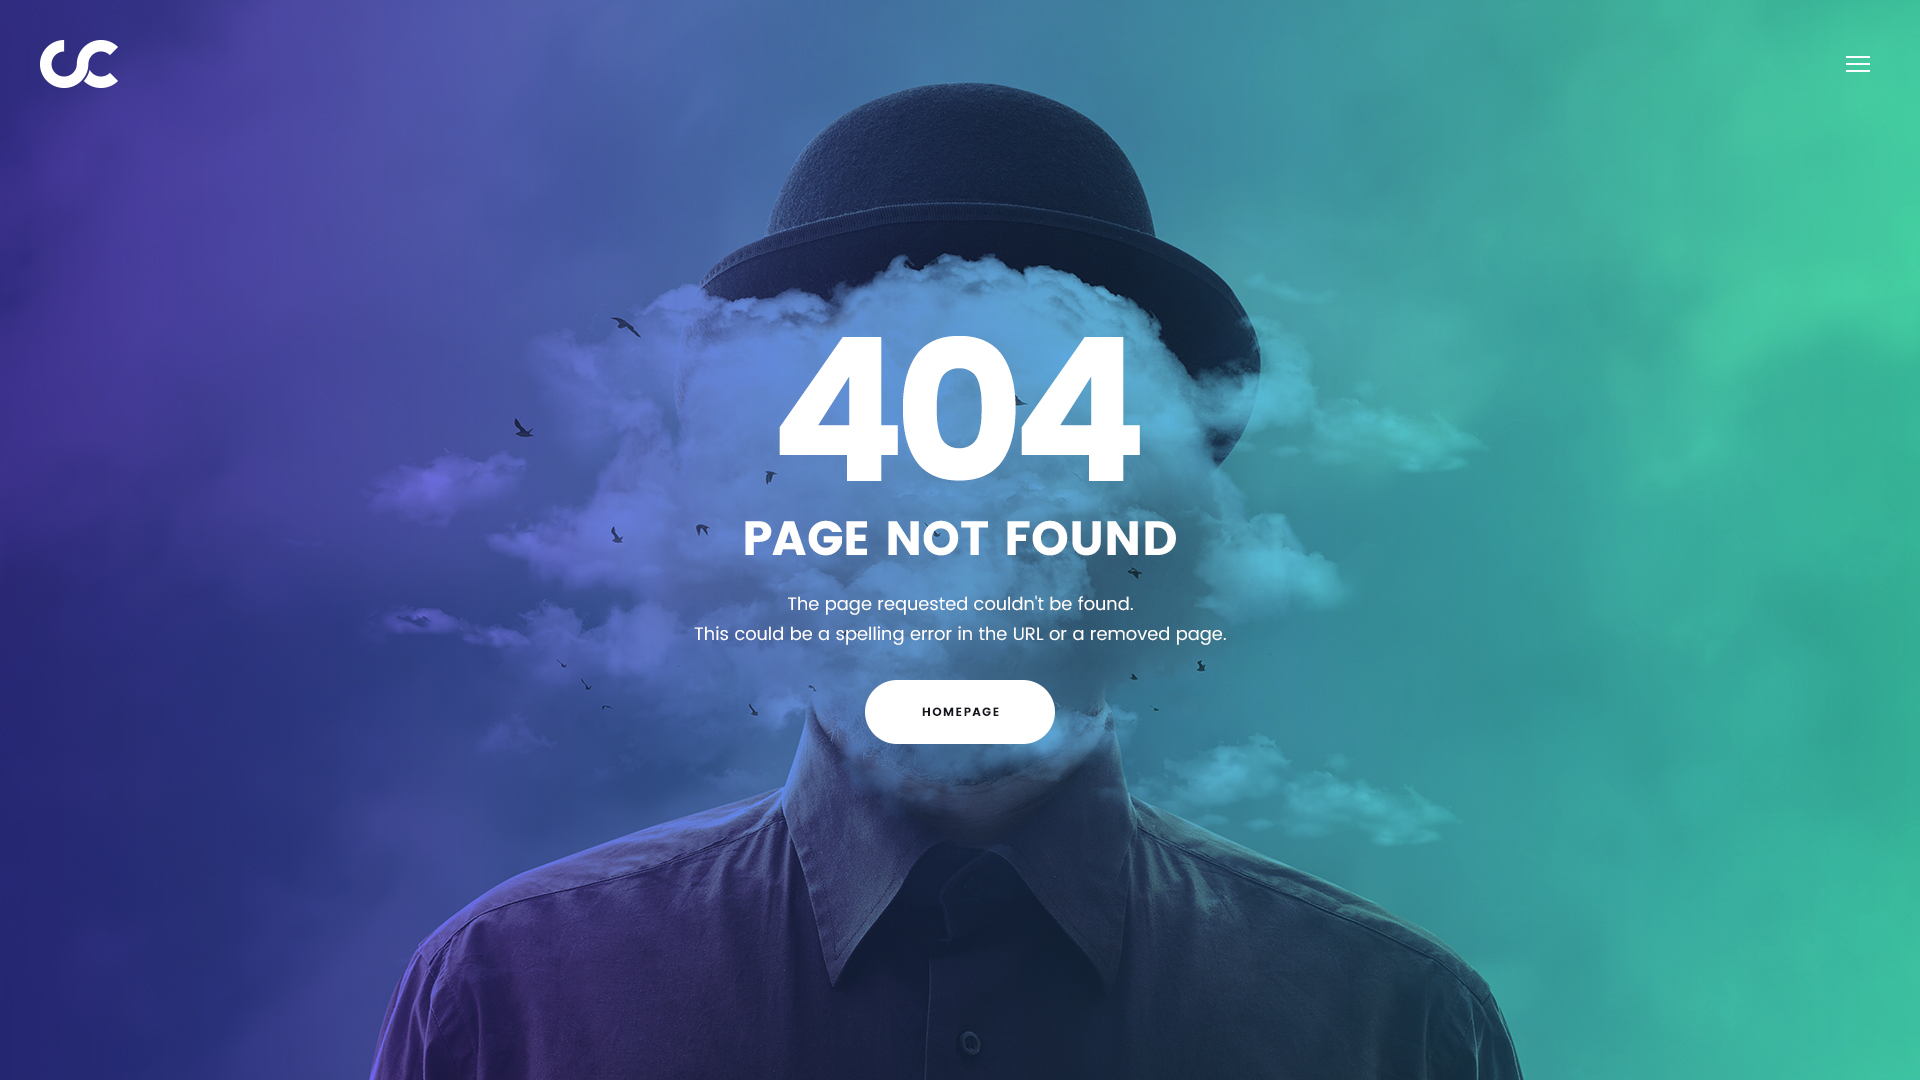 时尚潮流服装服饰设计师艺术网站404错误页面PSD网页模板C